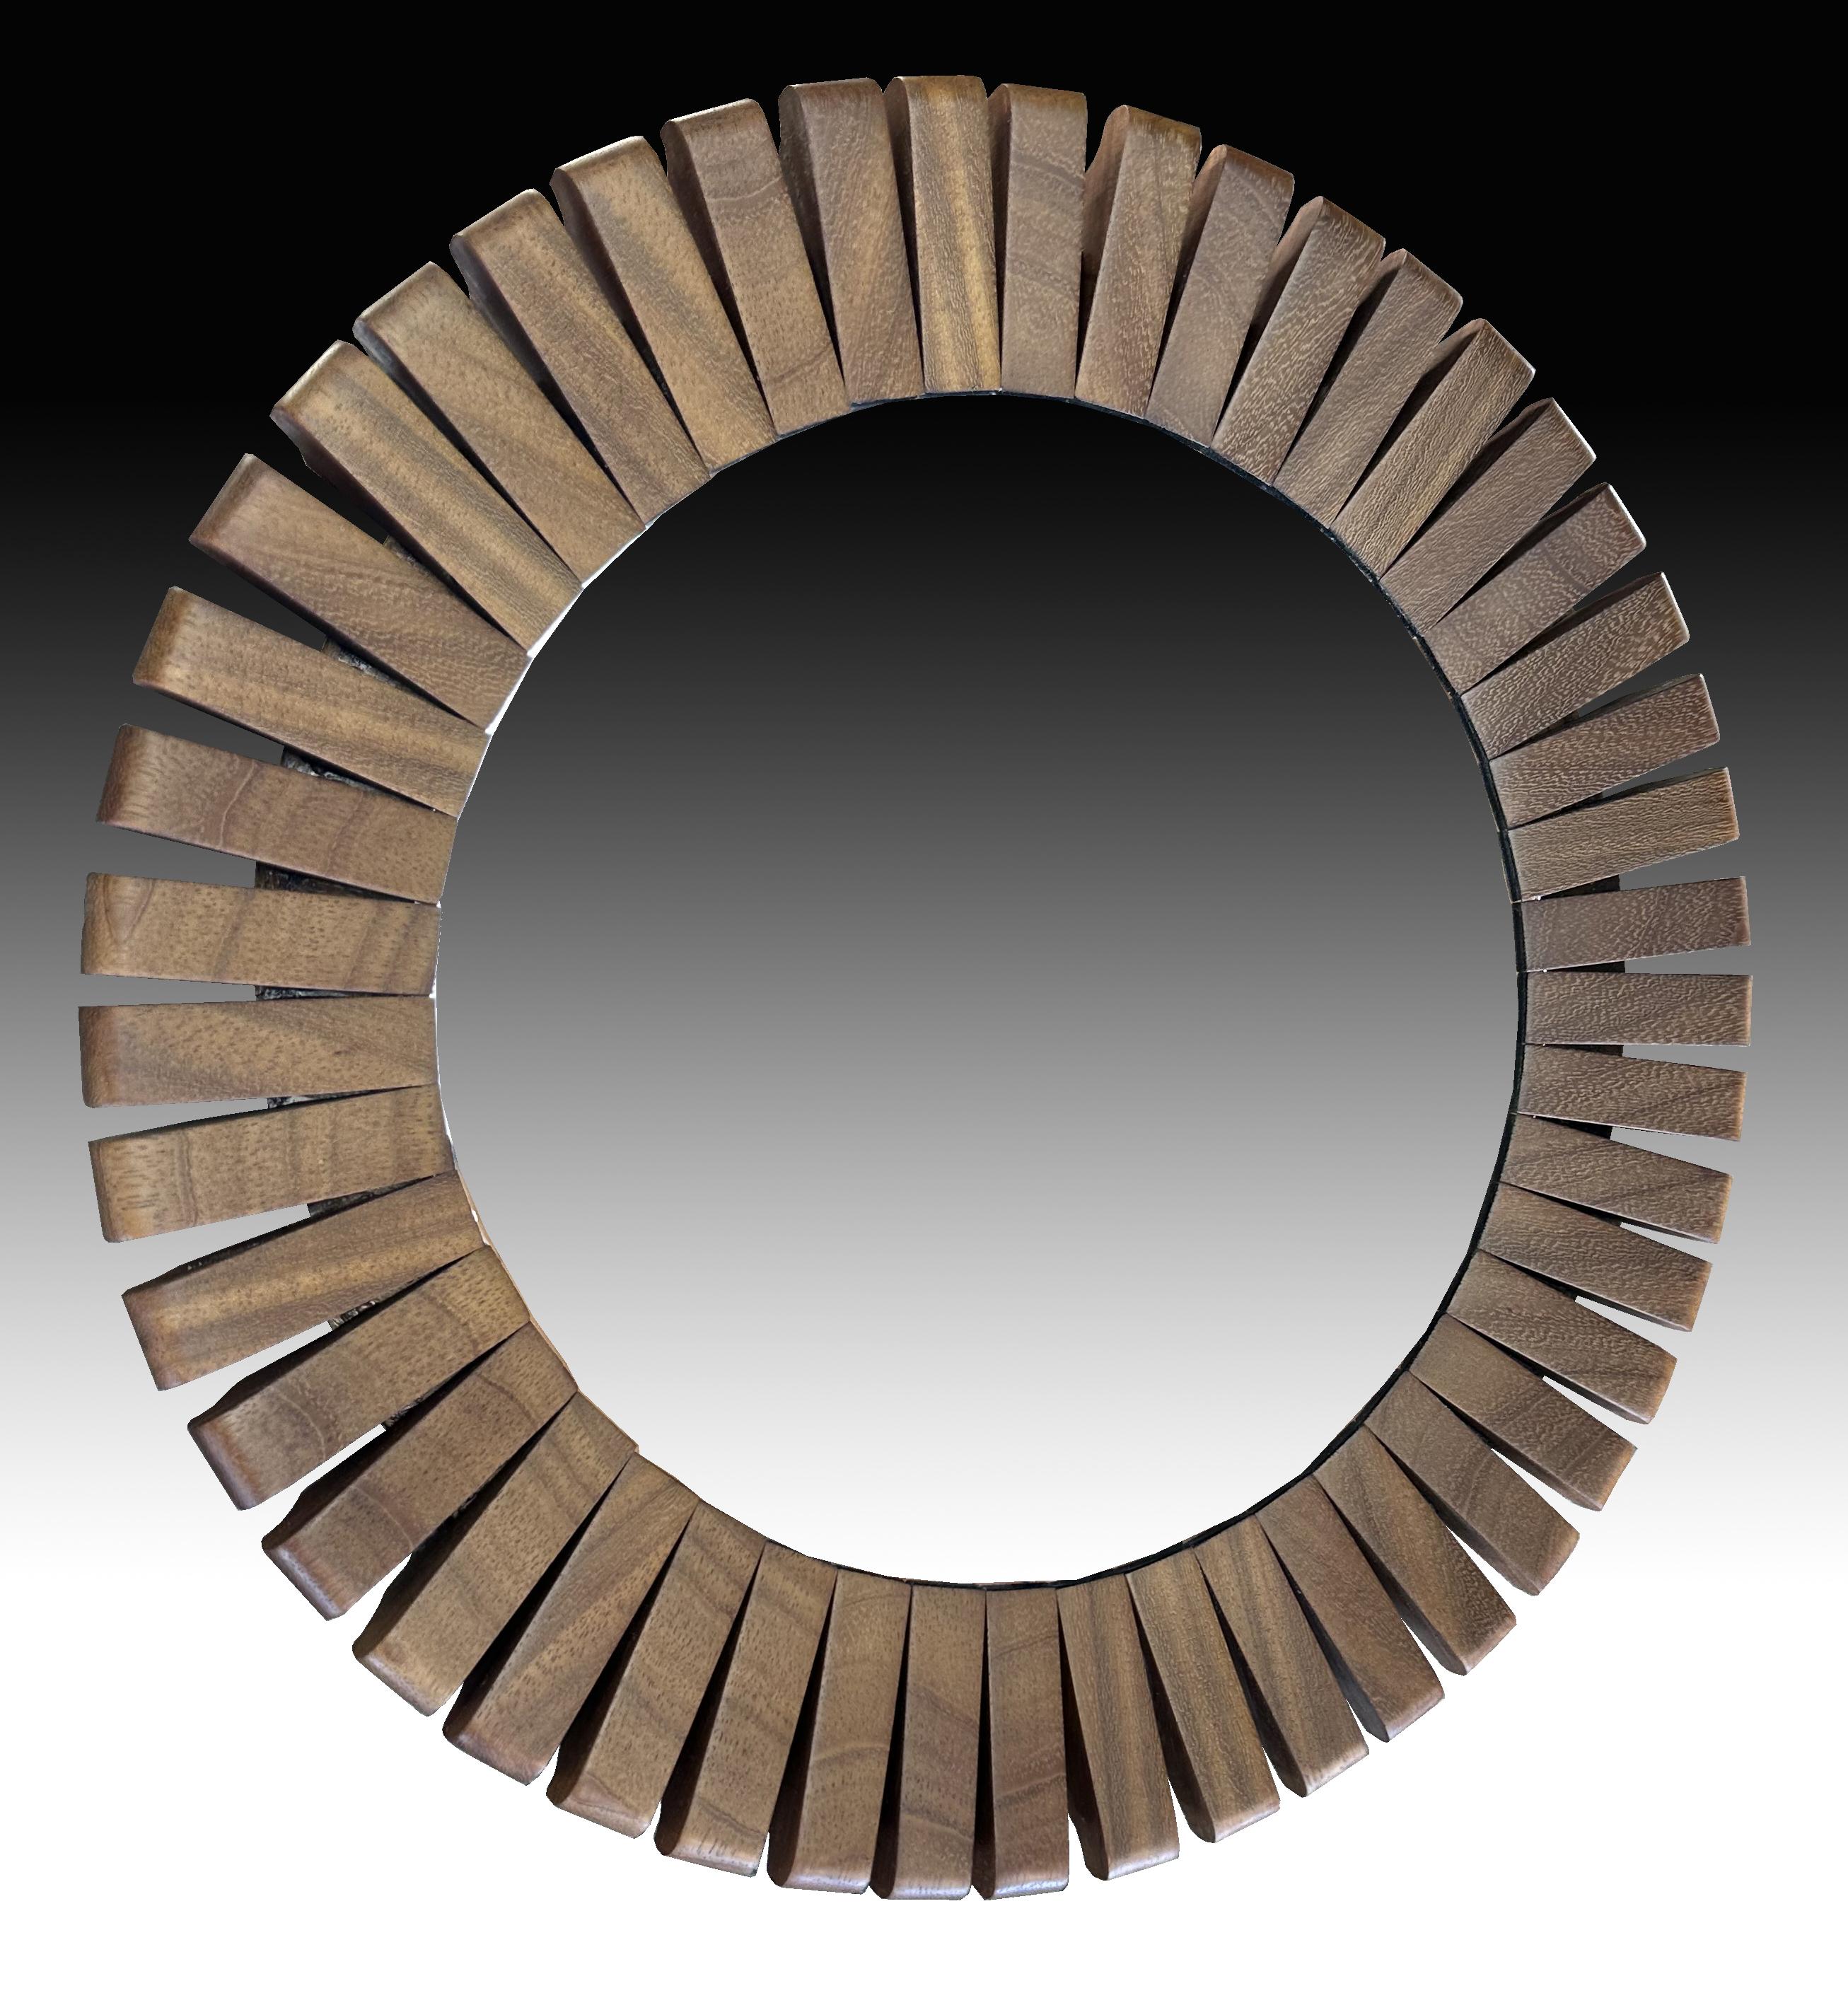 Un très beau miroir circulaire à cadre segmenté, l'ensemble en très bon état, sans aucun défaut ni sur le verre ni sur le cadre.
Le miroir réel a un diamètre de 38 cm et le cadre mesure 56 cm.